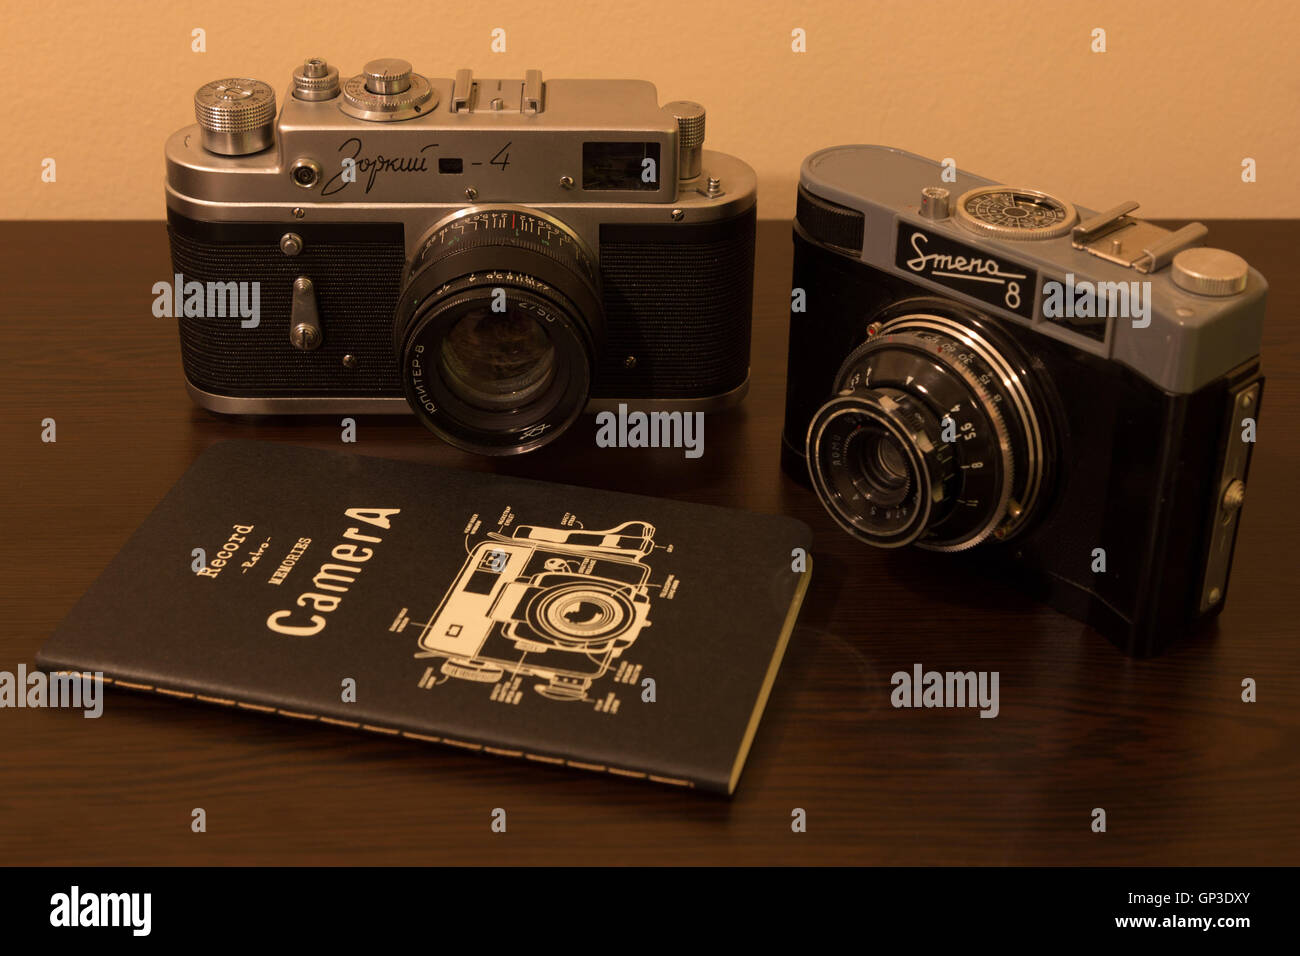 Camera, Photography, Retro, Old Camera Stock Photo